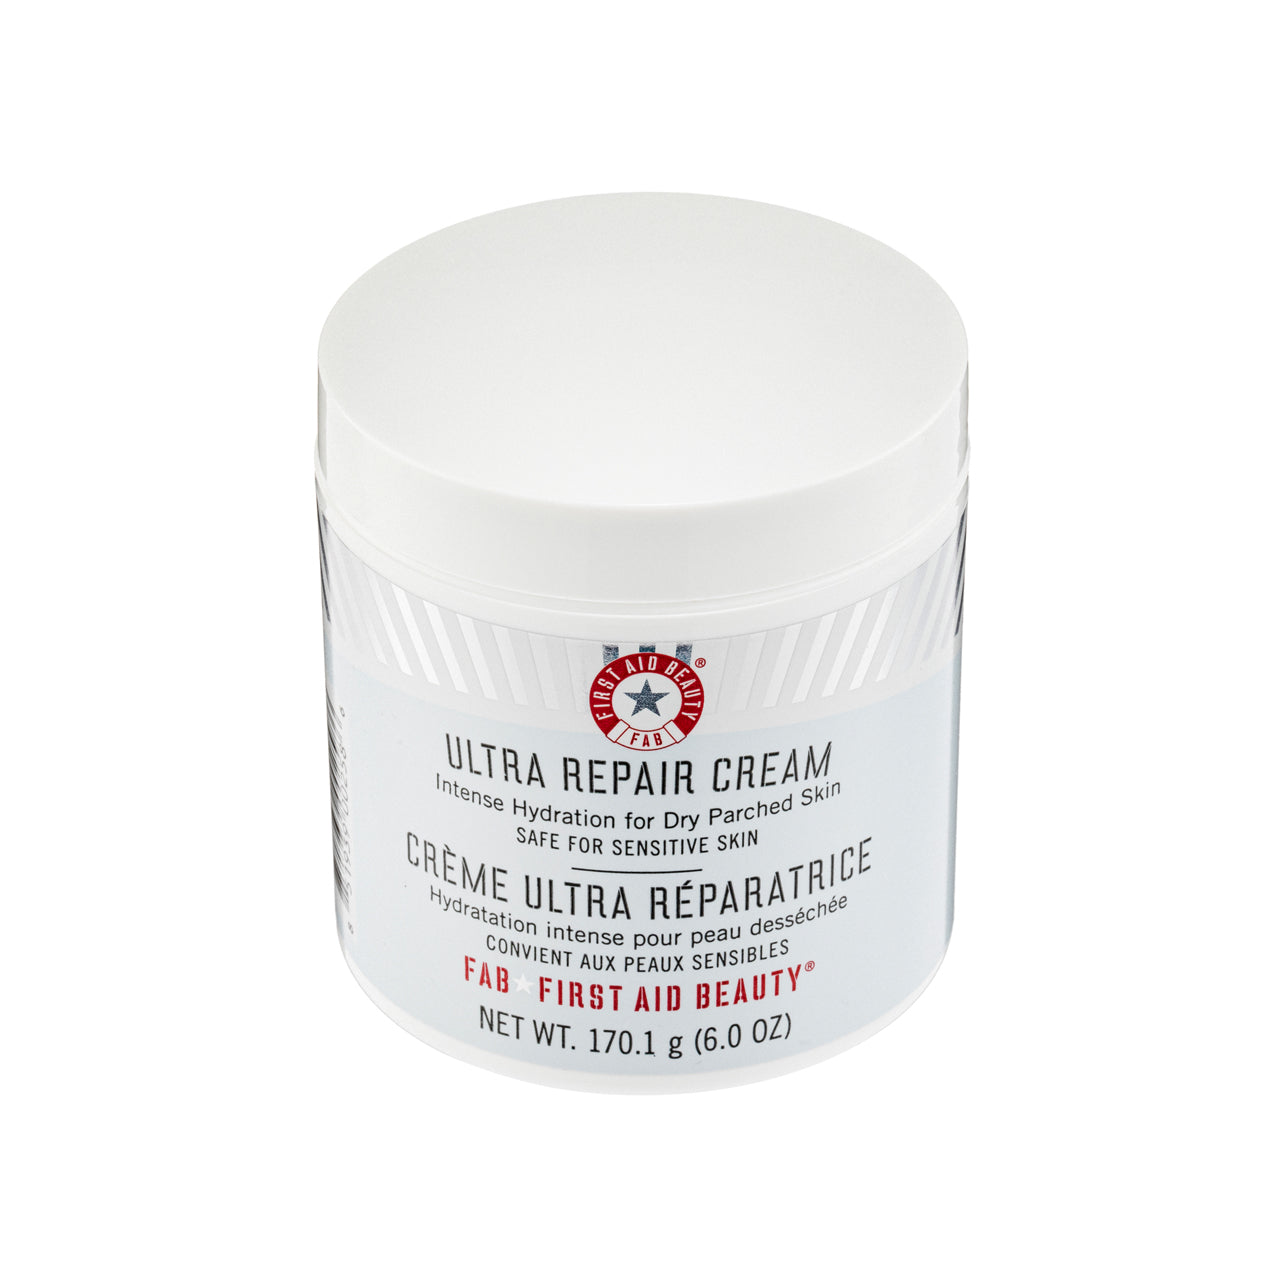 First Aid Beauty Ultra Repair Cream 6Oz | Sasa Global eShop